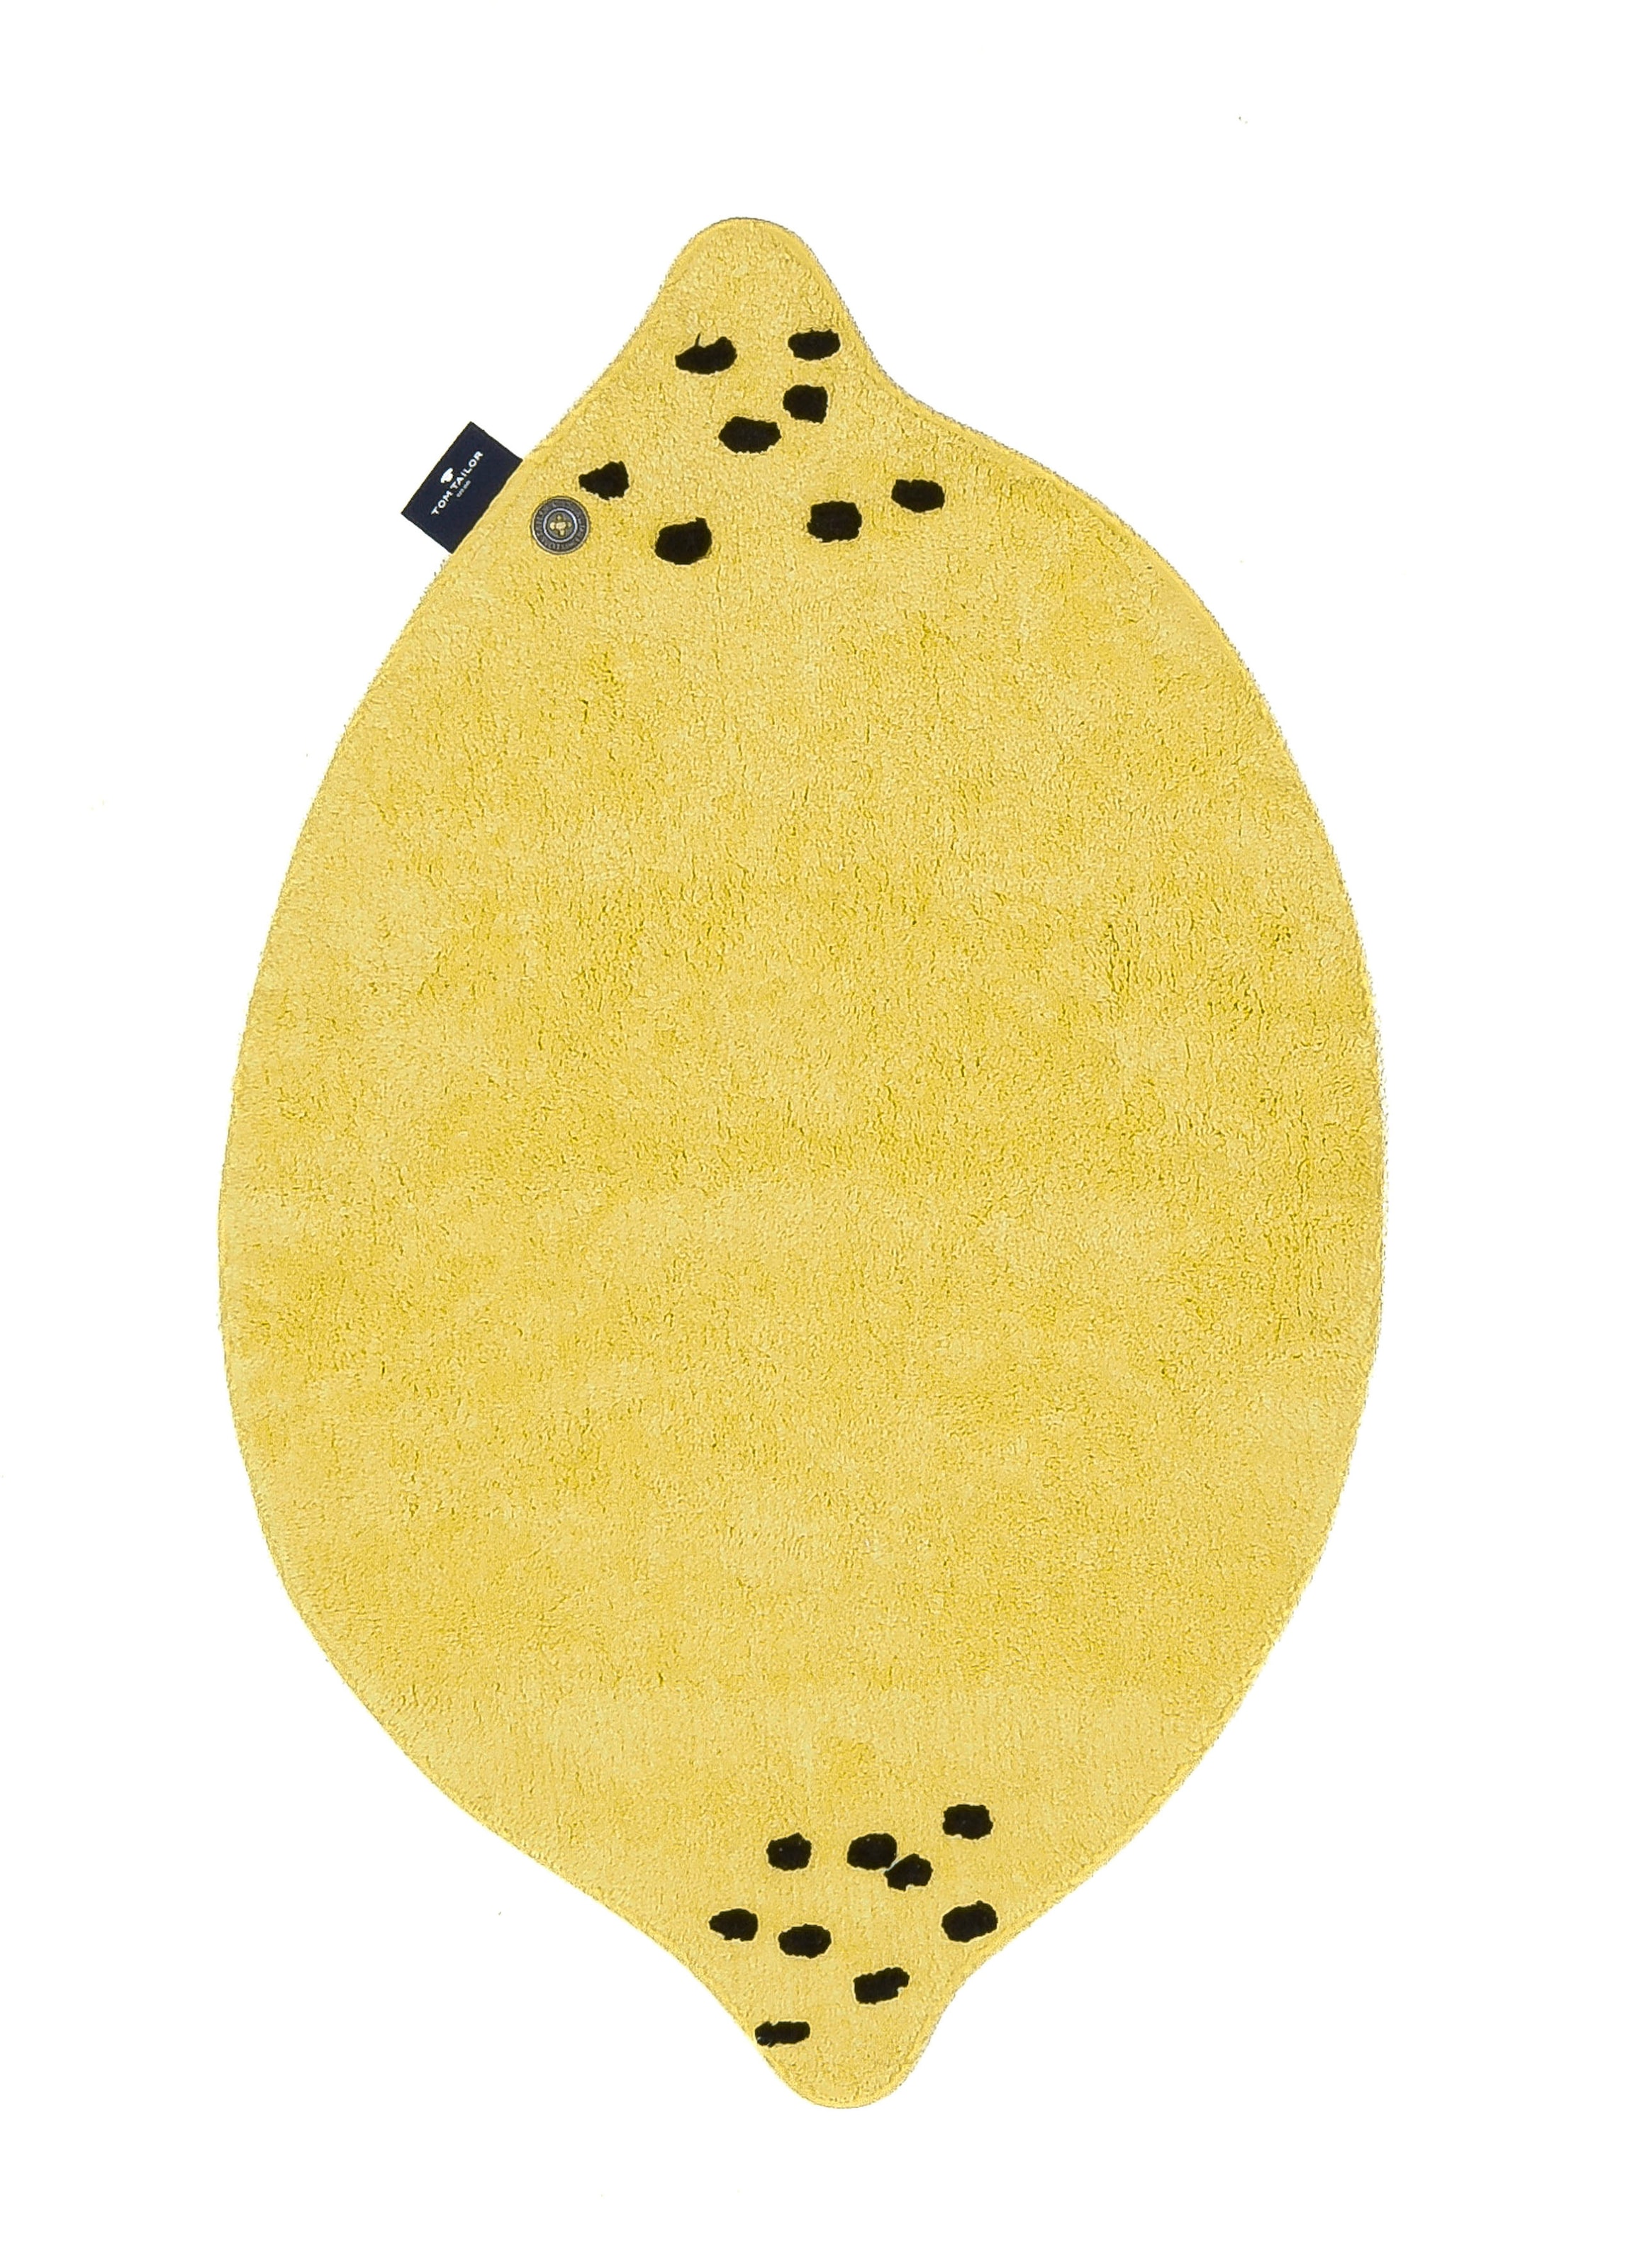 TOM TAILOR HOME Badematte »Bings Lemon«, Höhe 10 mm, fußbodenheizungsgeeignet, Badteppich, Motivform Zitrone, reine Baumwolle, Uni Farben, waschbar